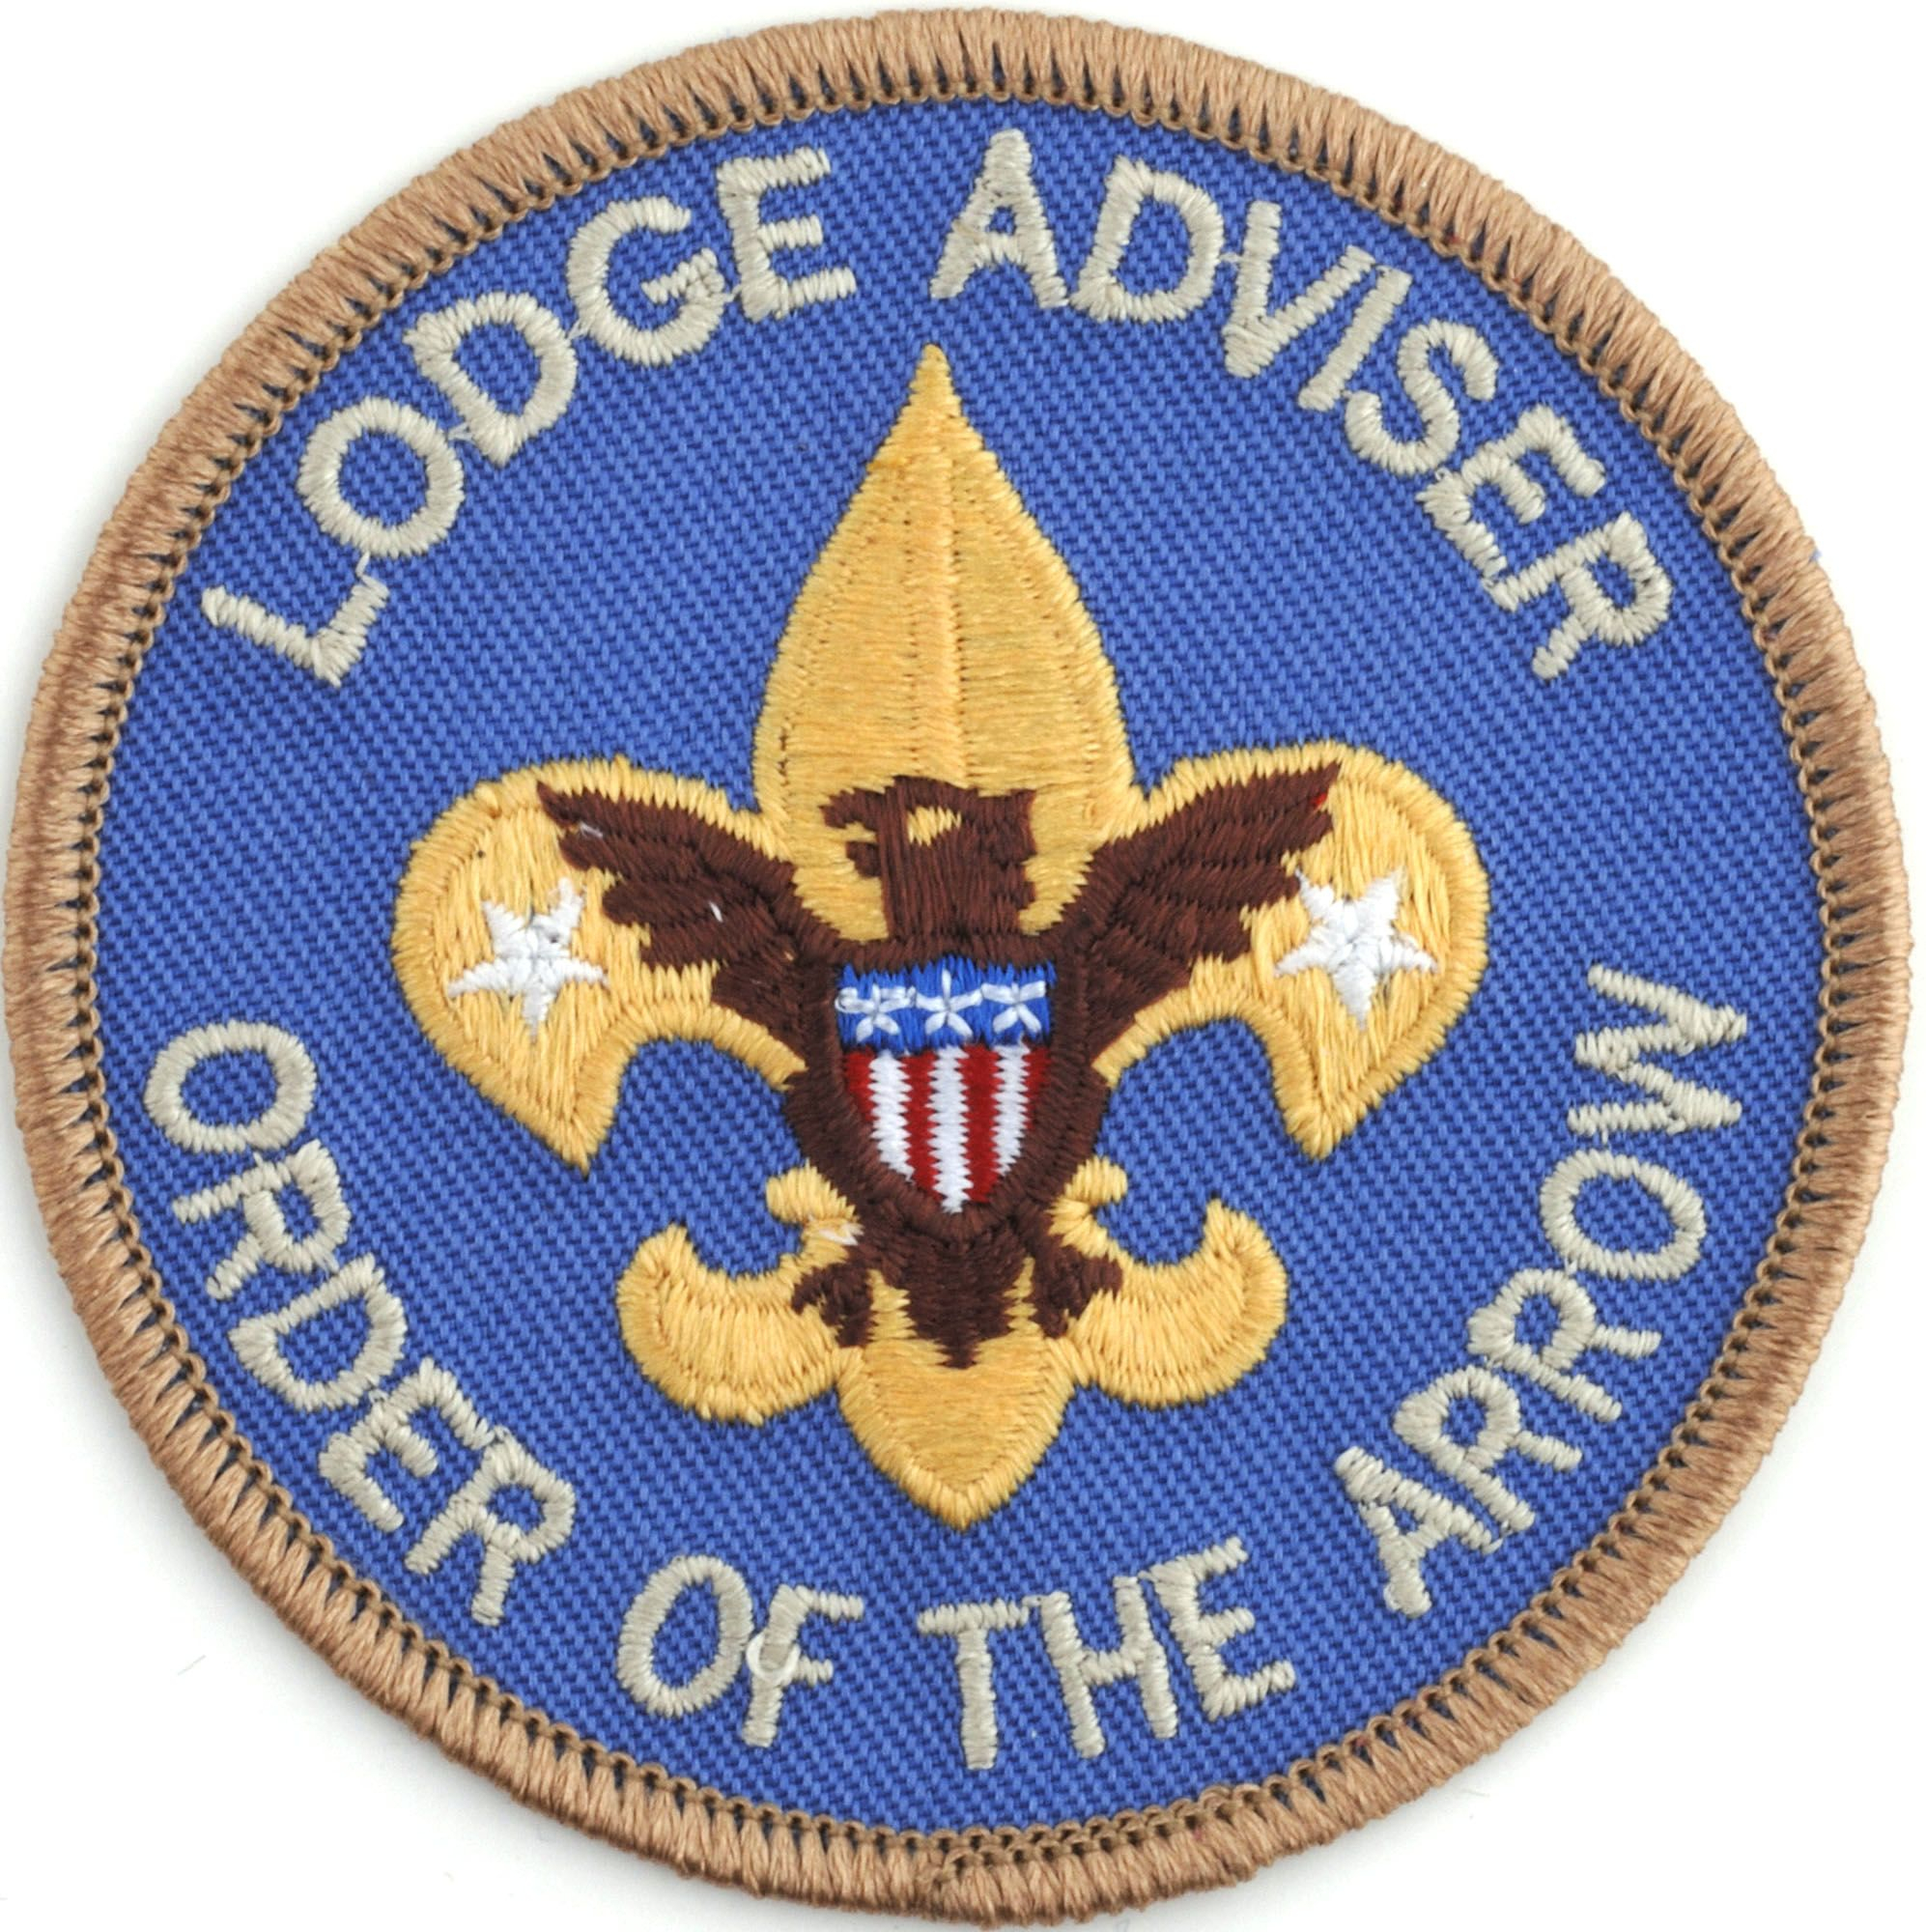 Lodge Adviser Position Patch